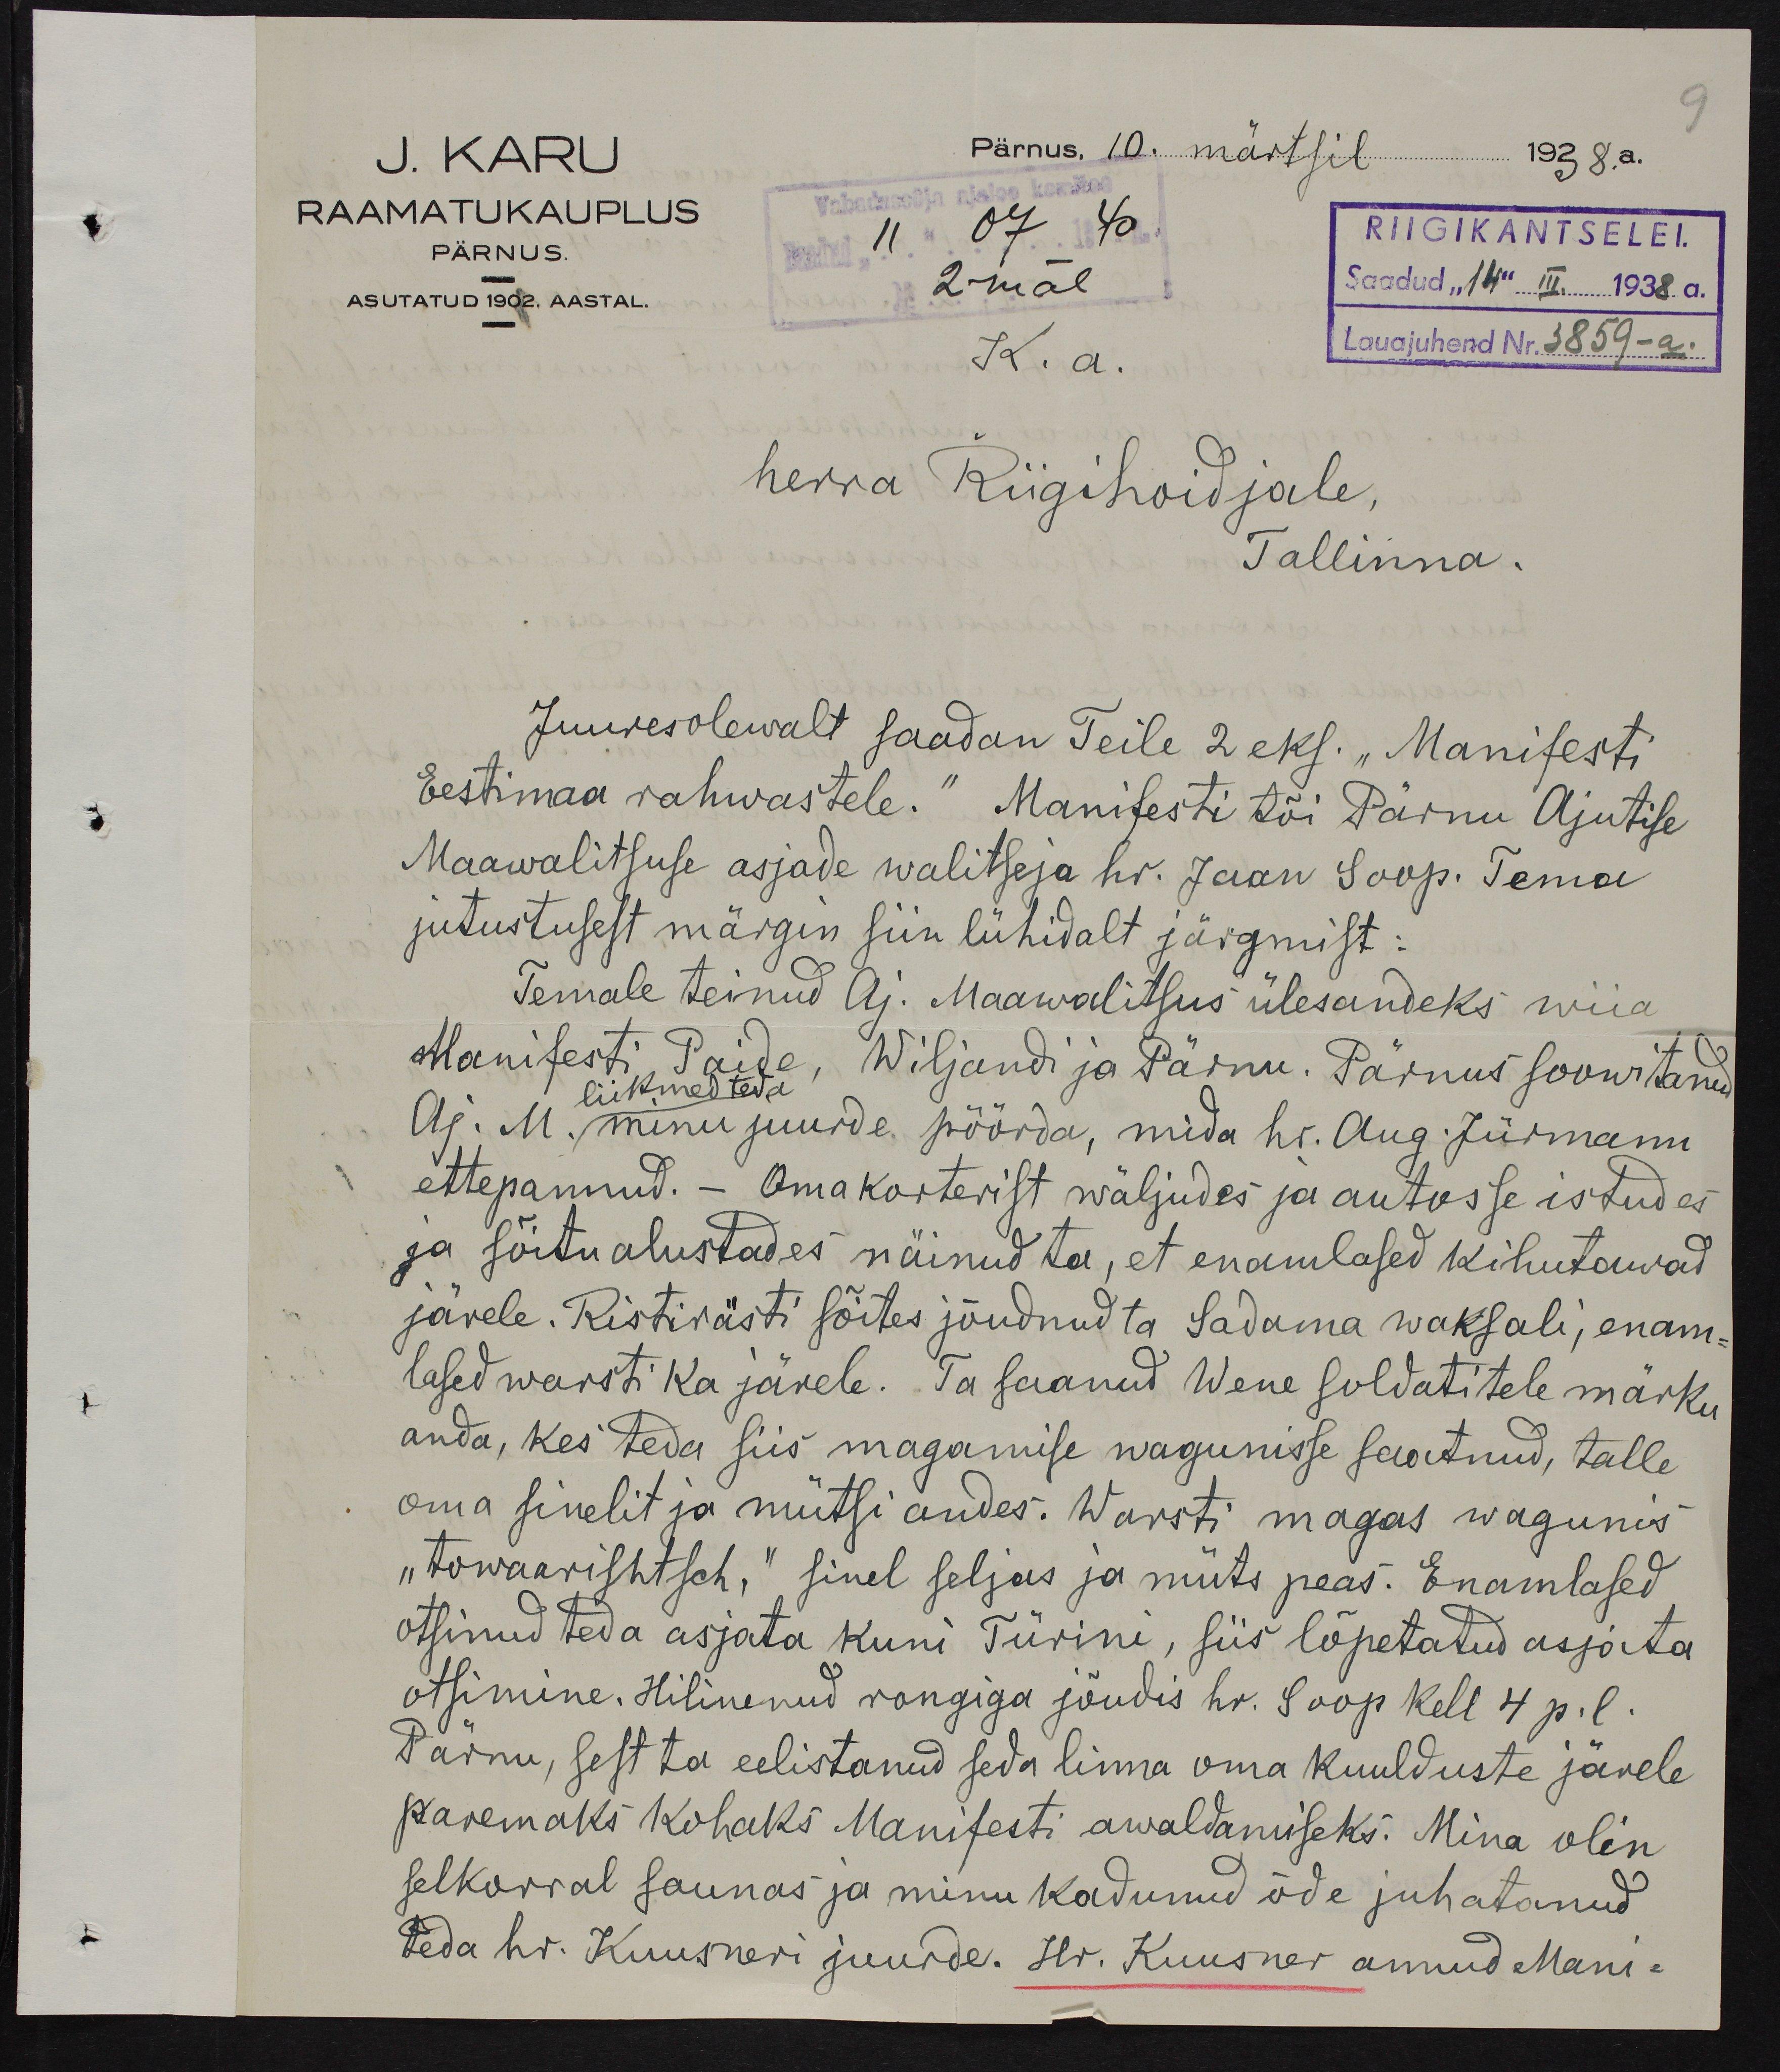 J.Karu kaaskiri Manifesti Eestimaa rahvastele saatmisest Hr. Riigihoidjale Tallinnas, 10. märtsil 1938. ERA.2124.3.520.